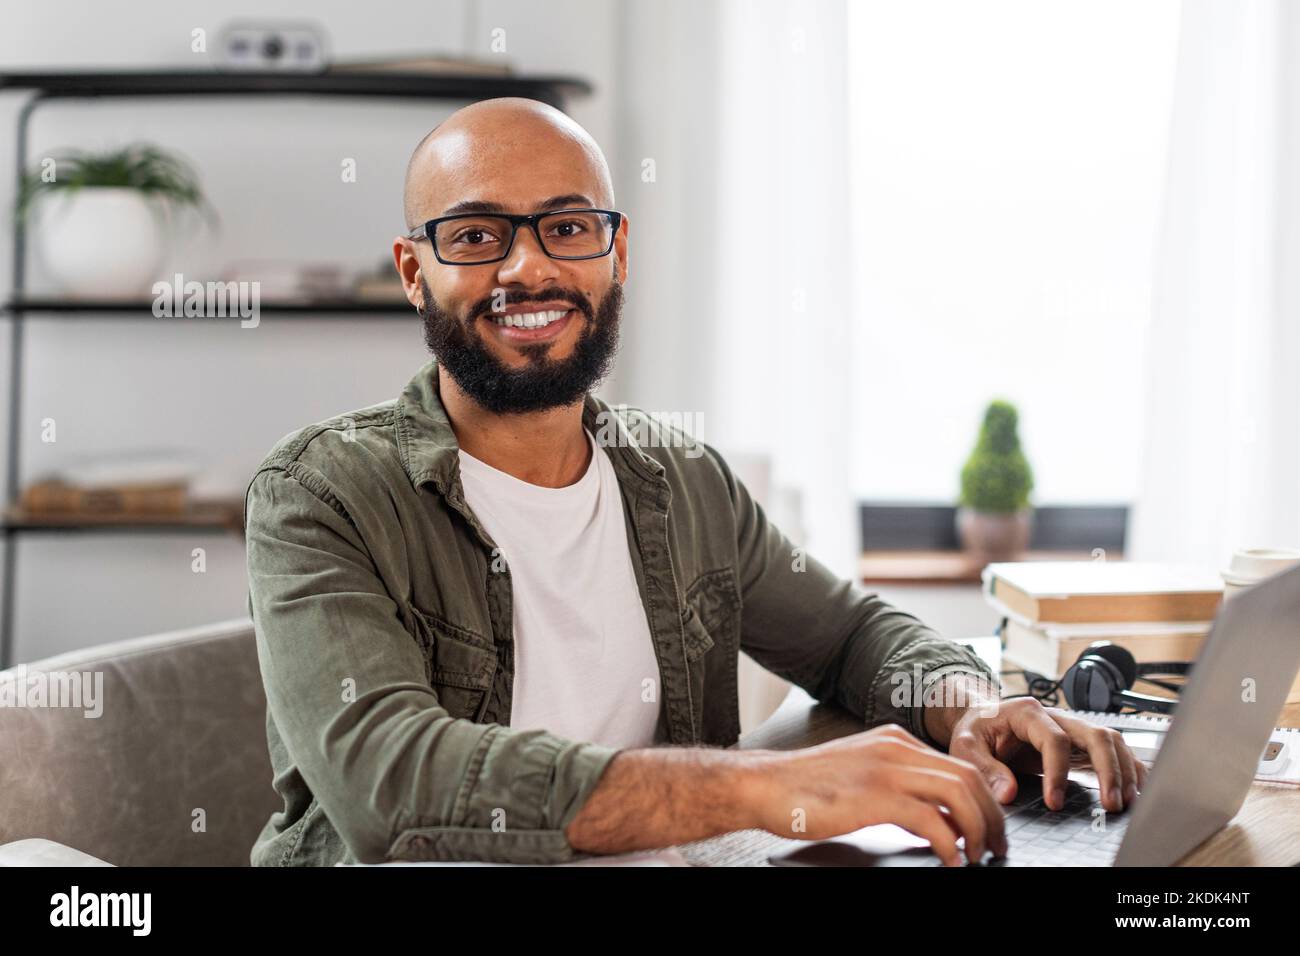 Ritratto di felice uomo latino maturo seduto alla scrivania, lavorando su pc portatile e sorridendo alla fotocamera, spazio libero Foto Stock